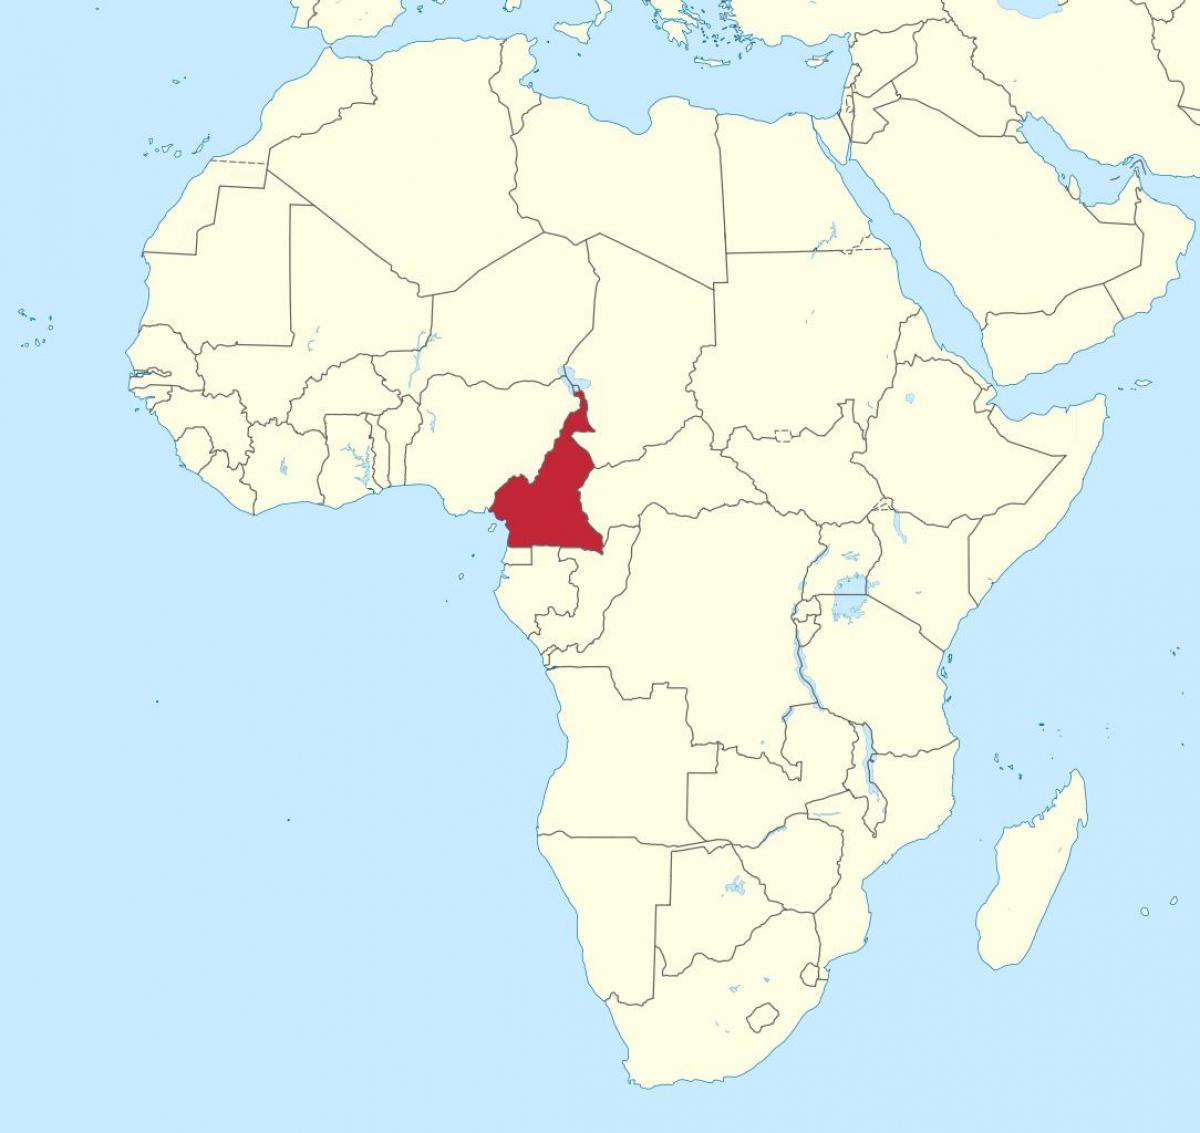 Peta Kamerun afrika barat